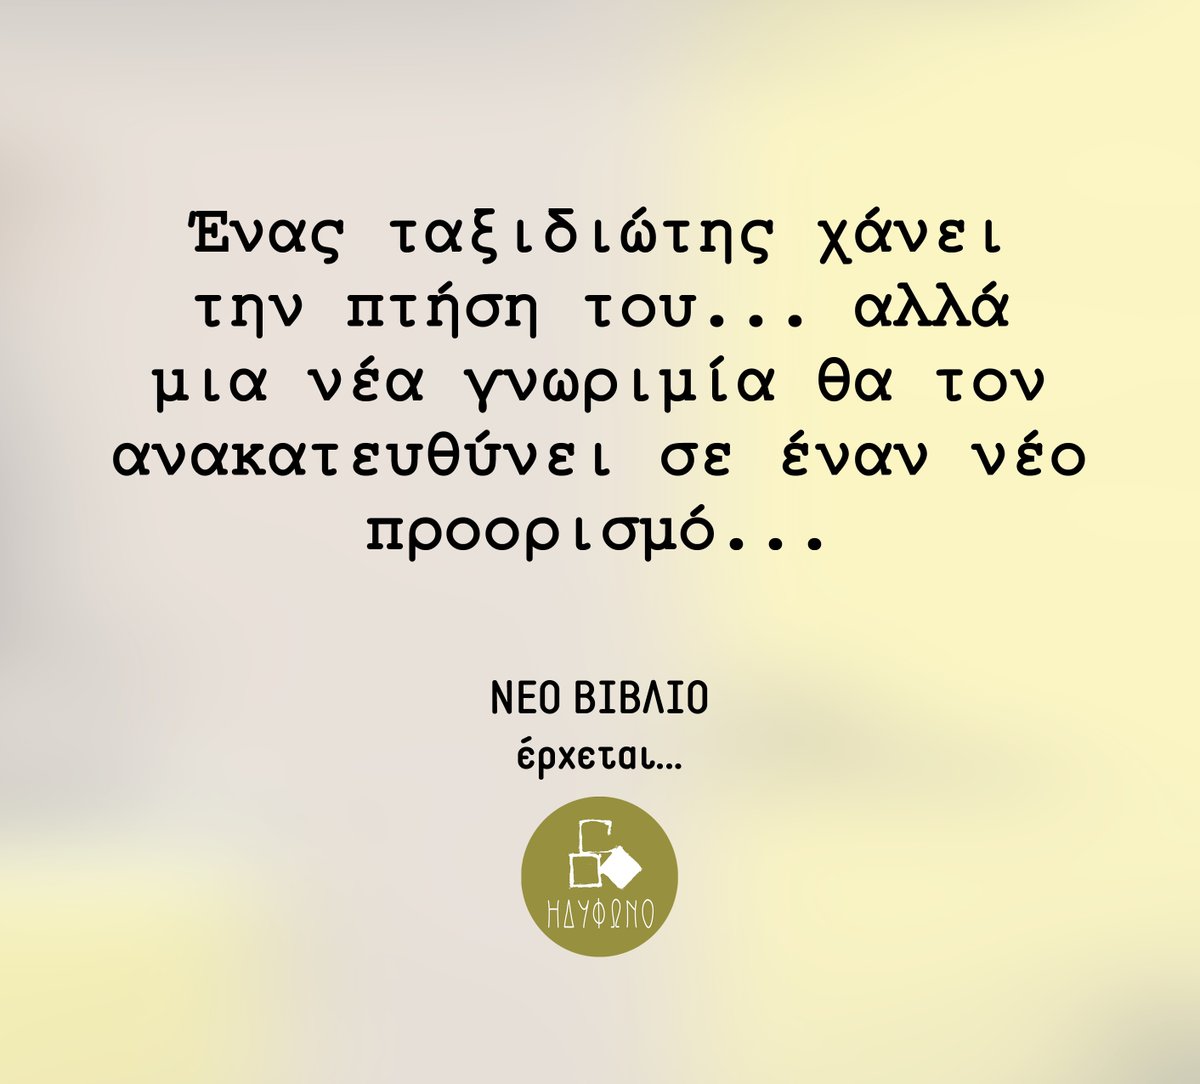 Νέο βιβλίο έρχεται!! Μείνετε συντονισμένοι!!!📚😊
--------------------------
#newbook #neovivlio #idifonobooks #idifono #vivlio #book #diavazo #greekwriters #booksofinstagram #bookish #booklovers #bookaddict #bookworm